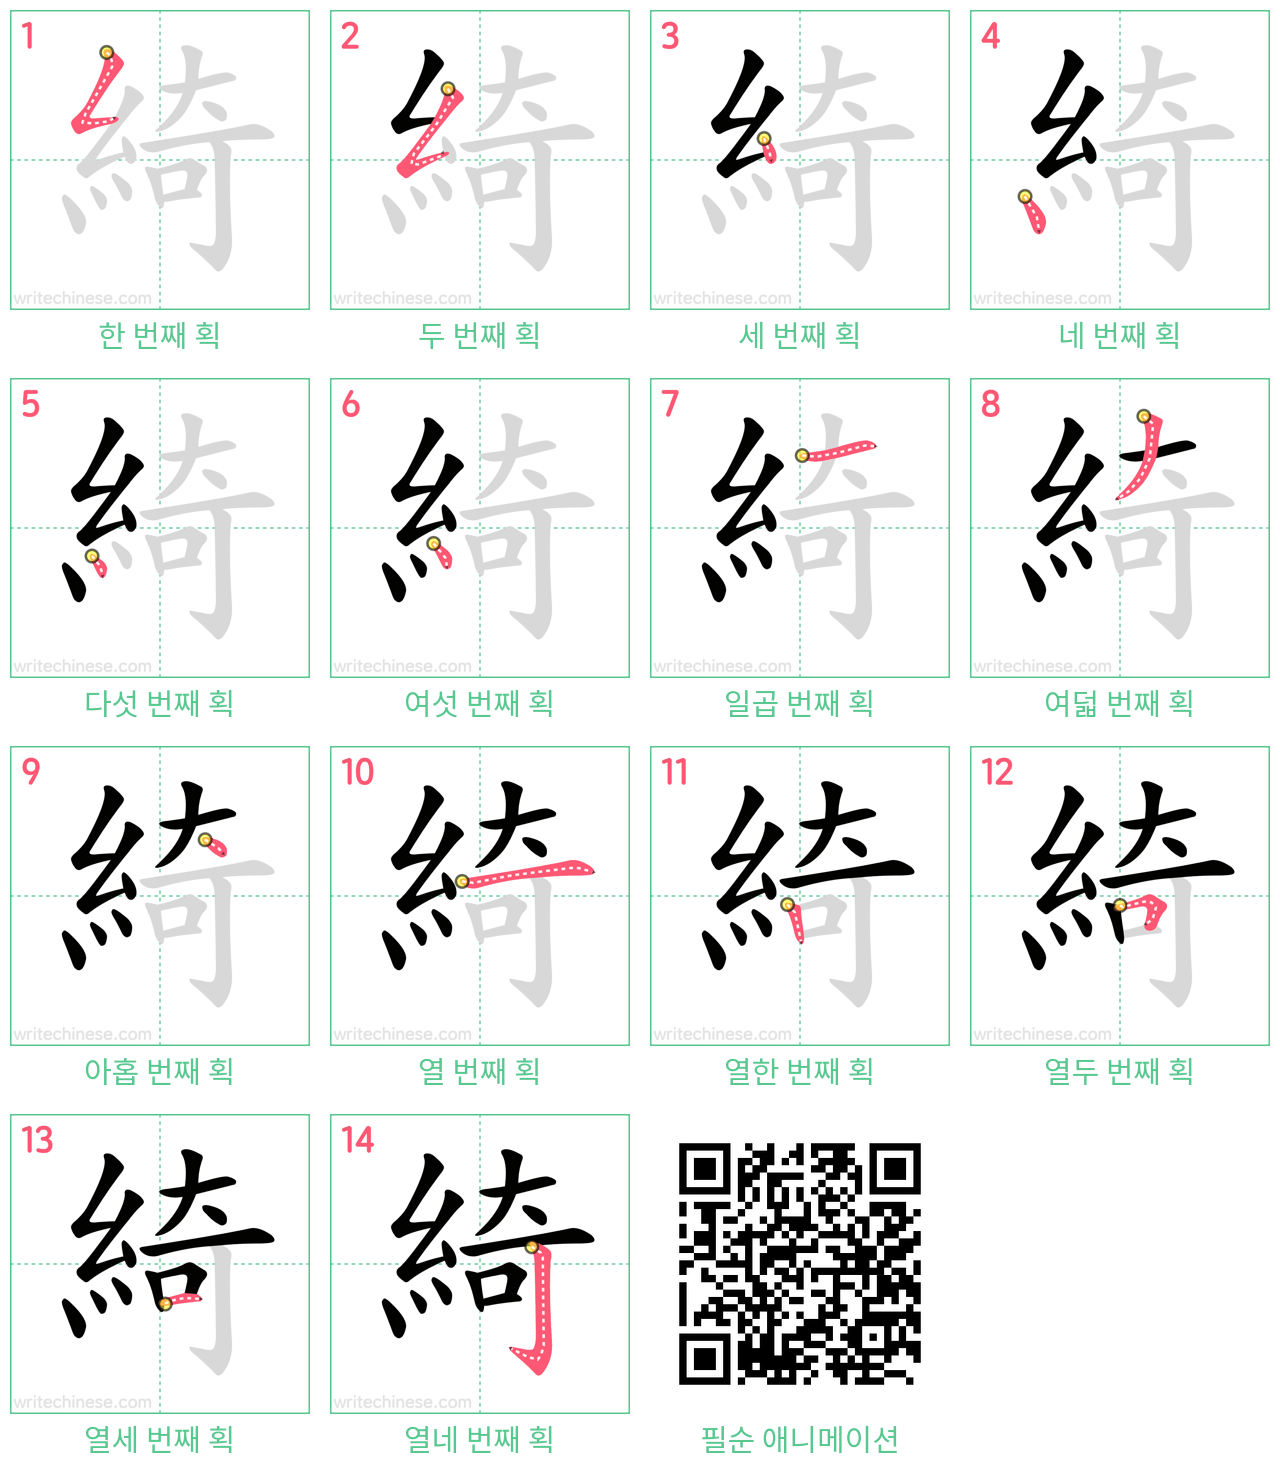 綺 step-by-step stroke order diagrams